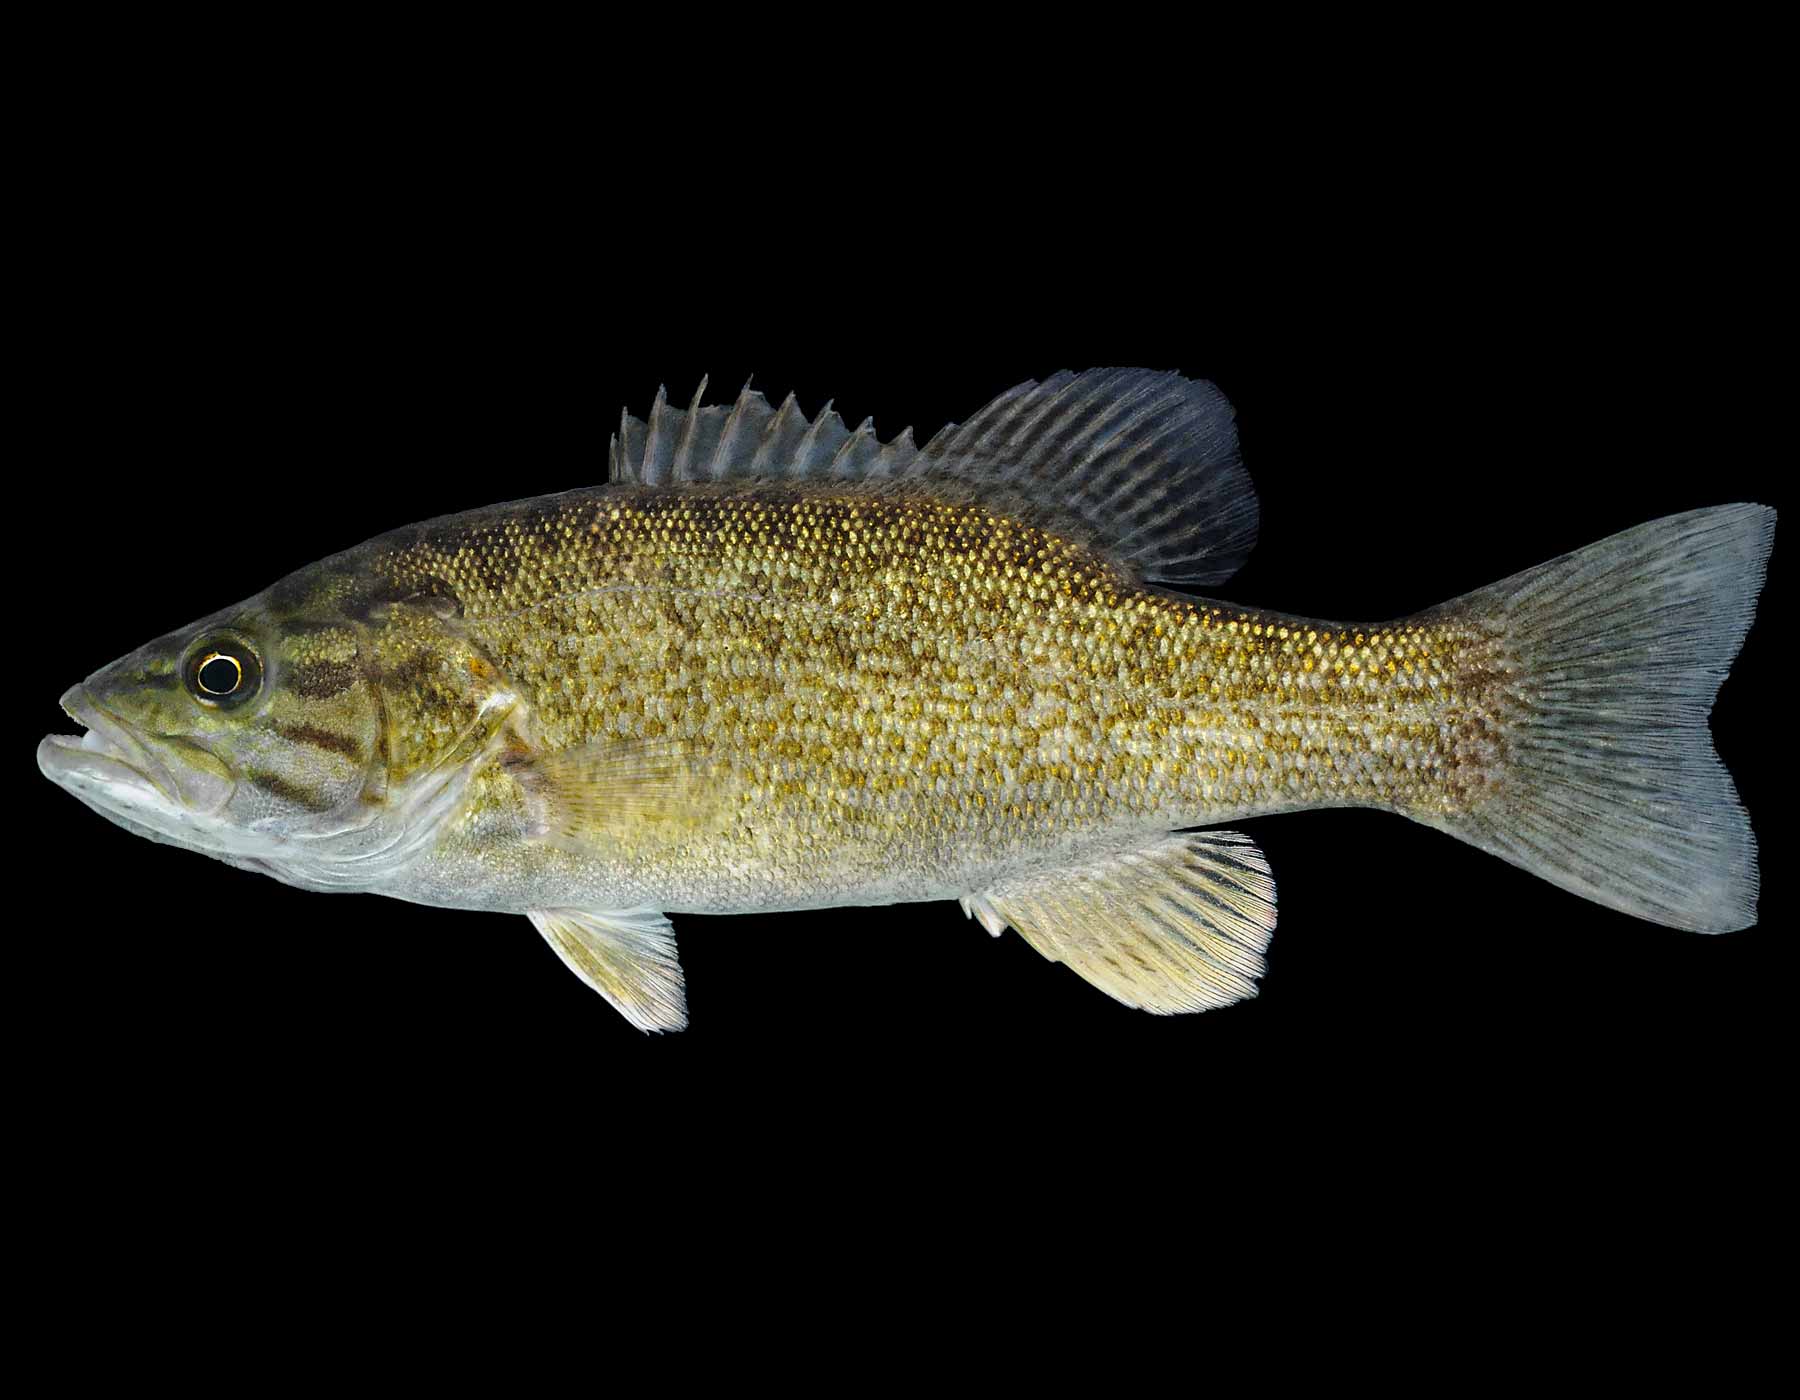 Рыба «Басс жёлтый» фото и описание